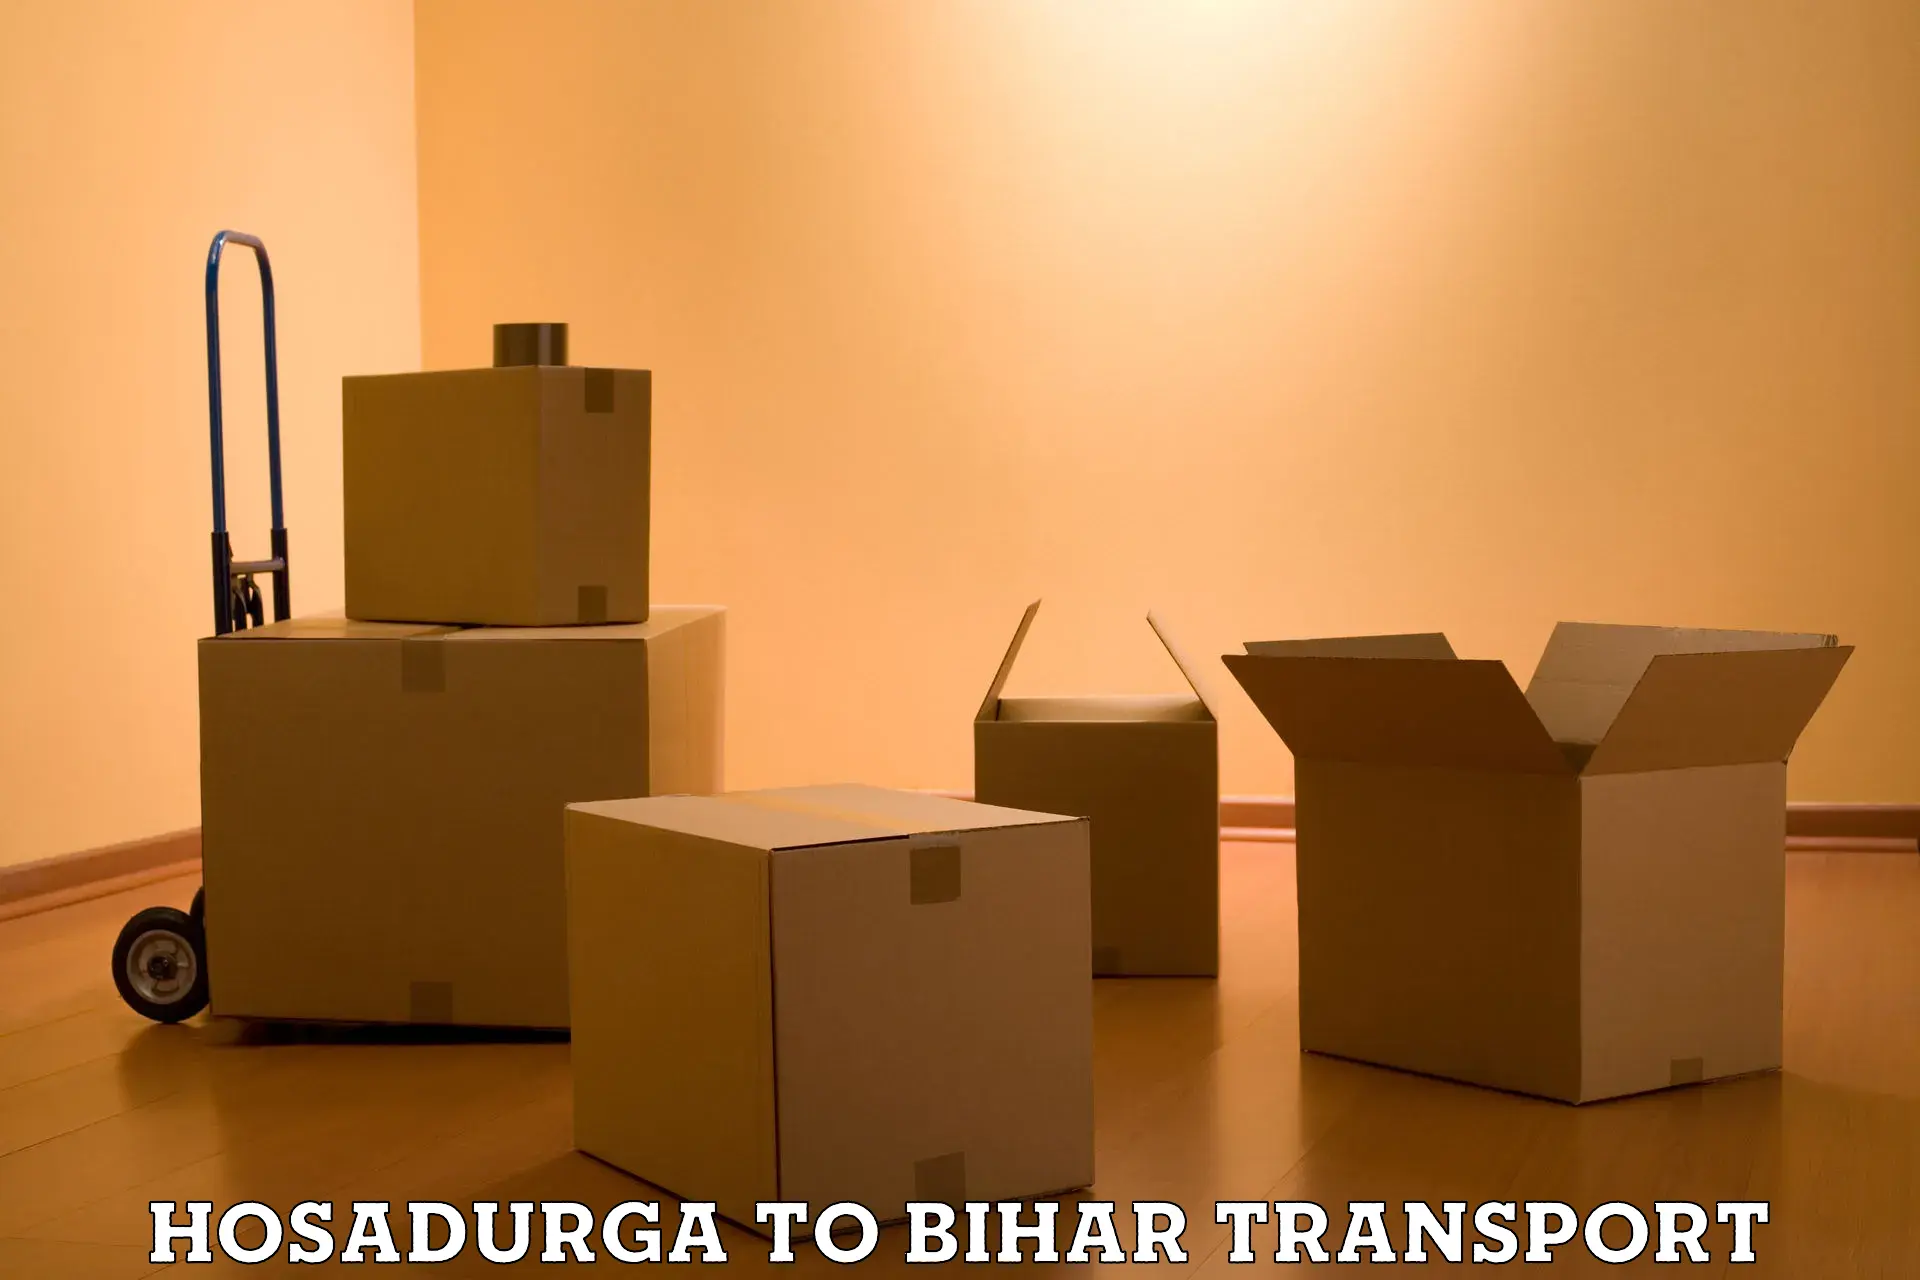 Pick up transport service Hosadurga to Dighwara